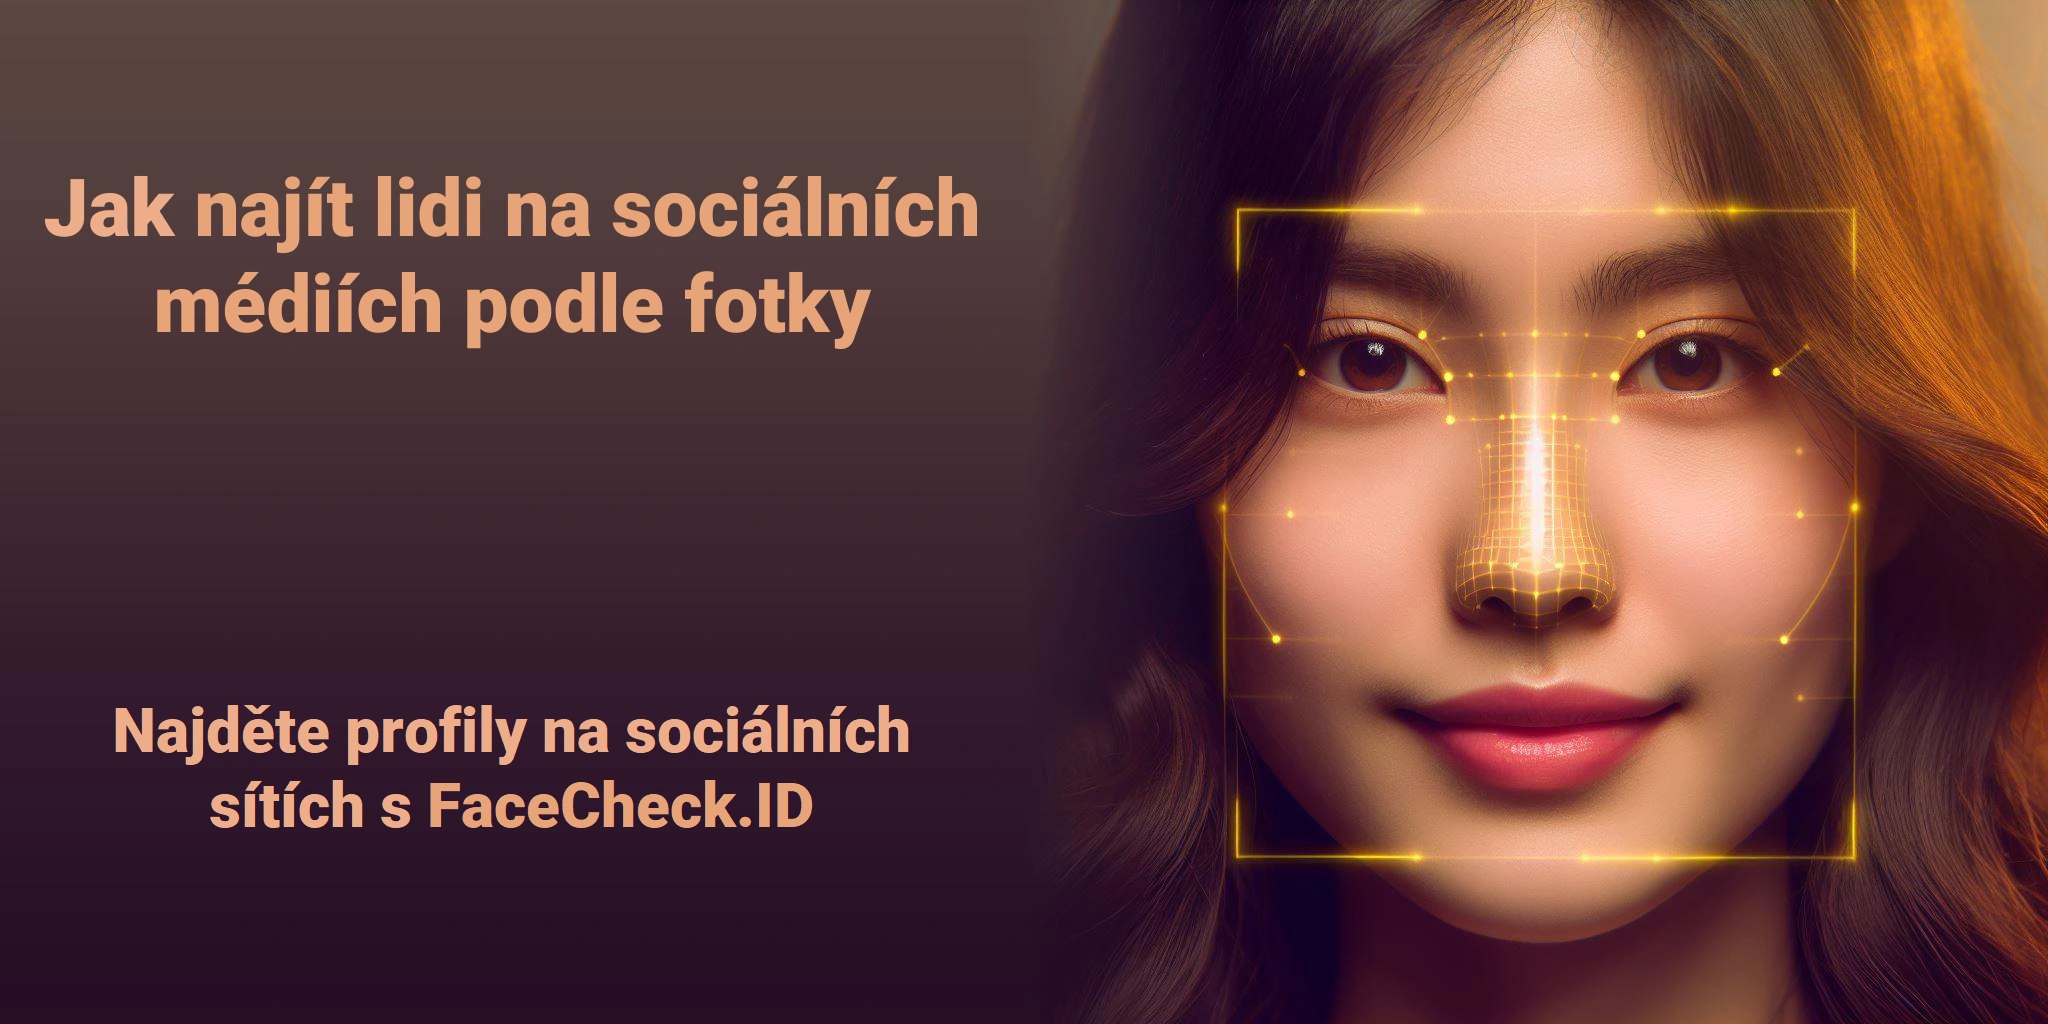 Jak najít lidi na sociálních médiích podle fotky Najděte profily na sociálních sítích s FaceCheck.ID